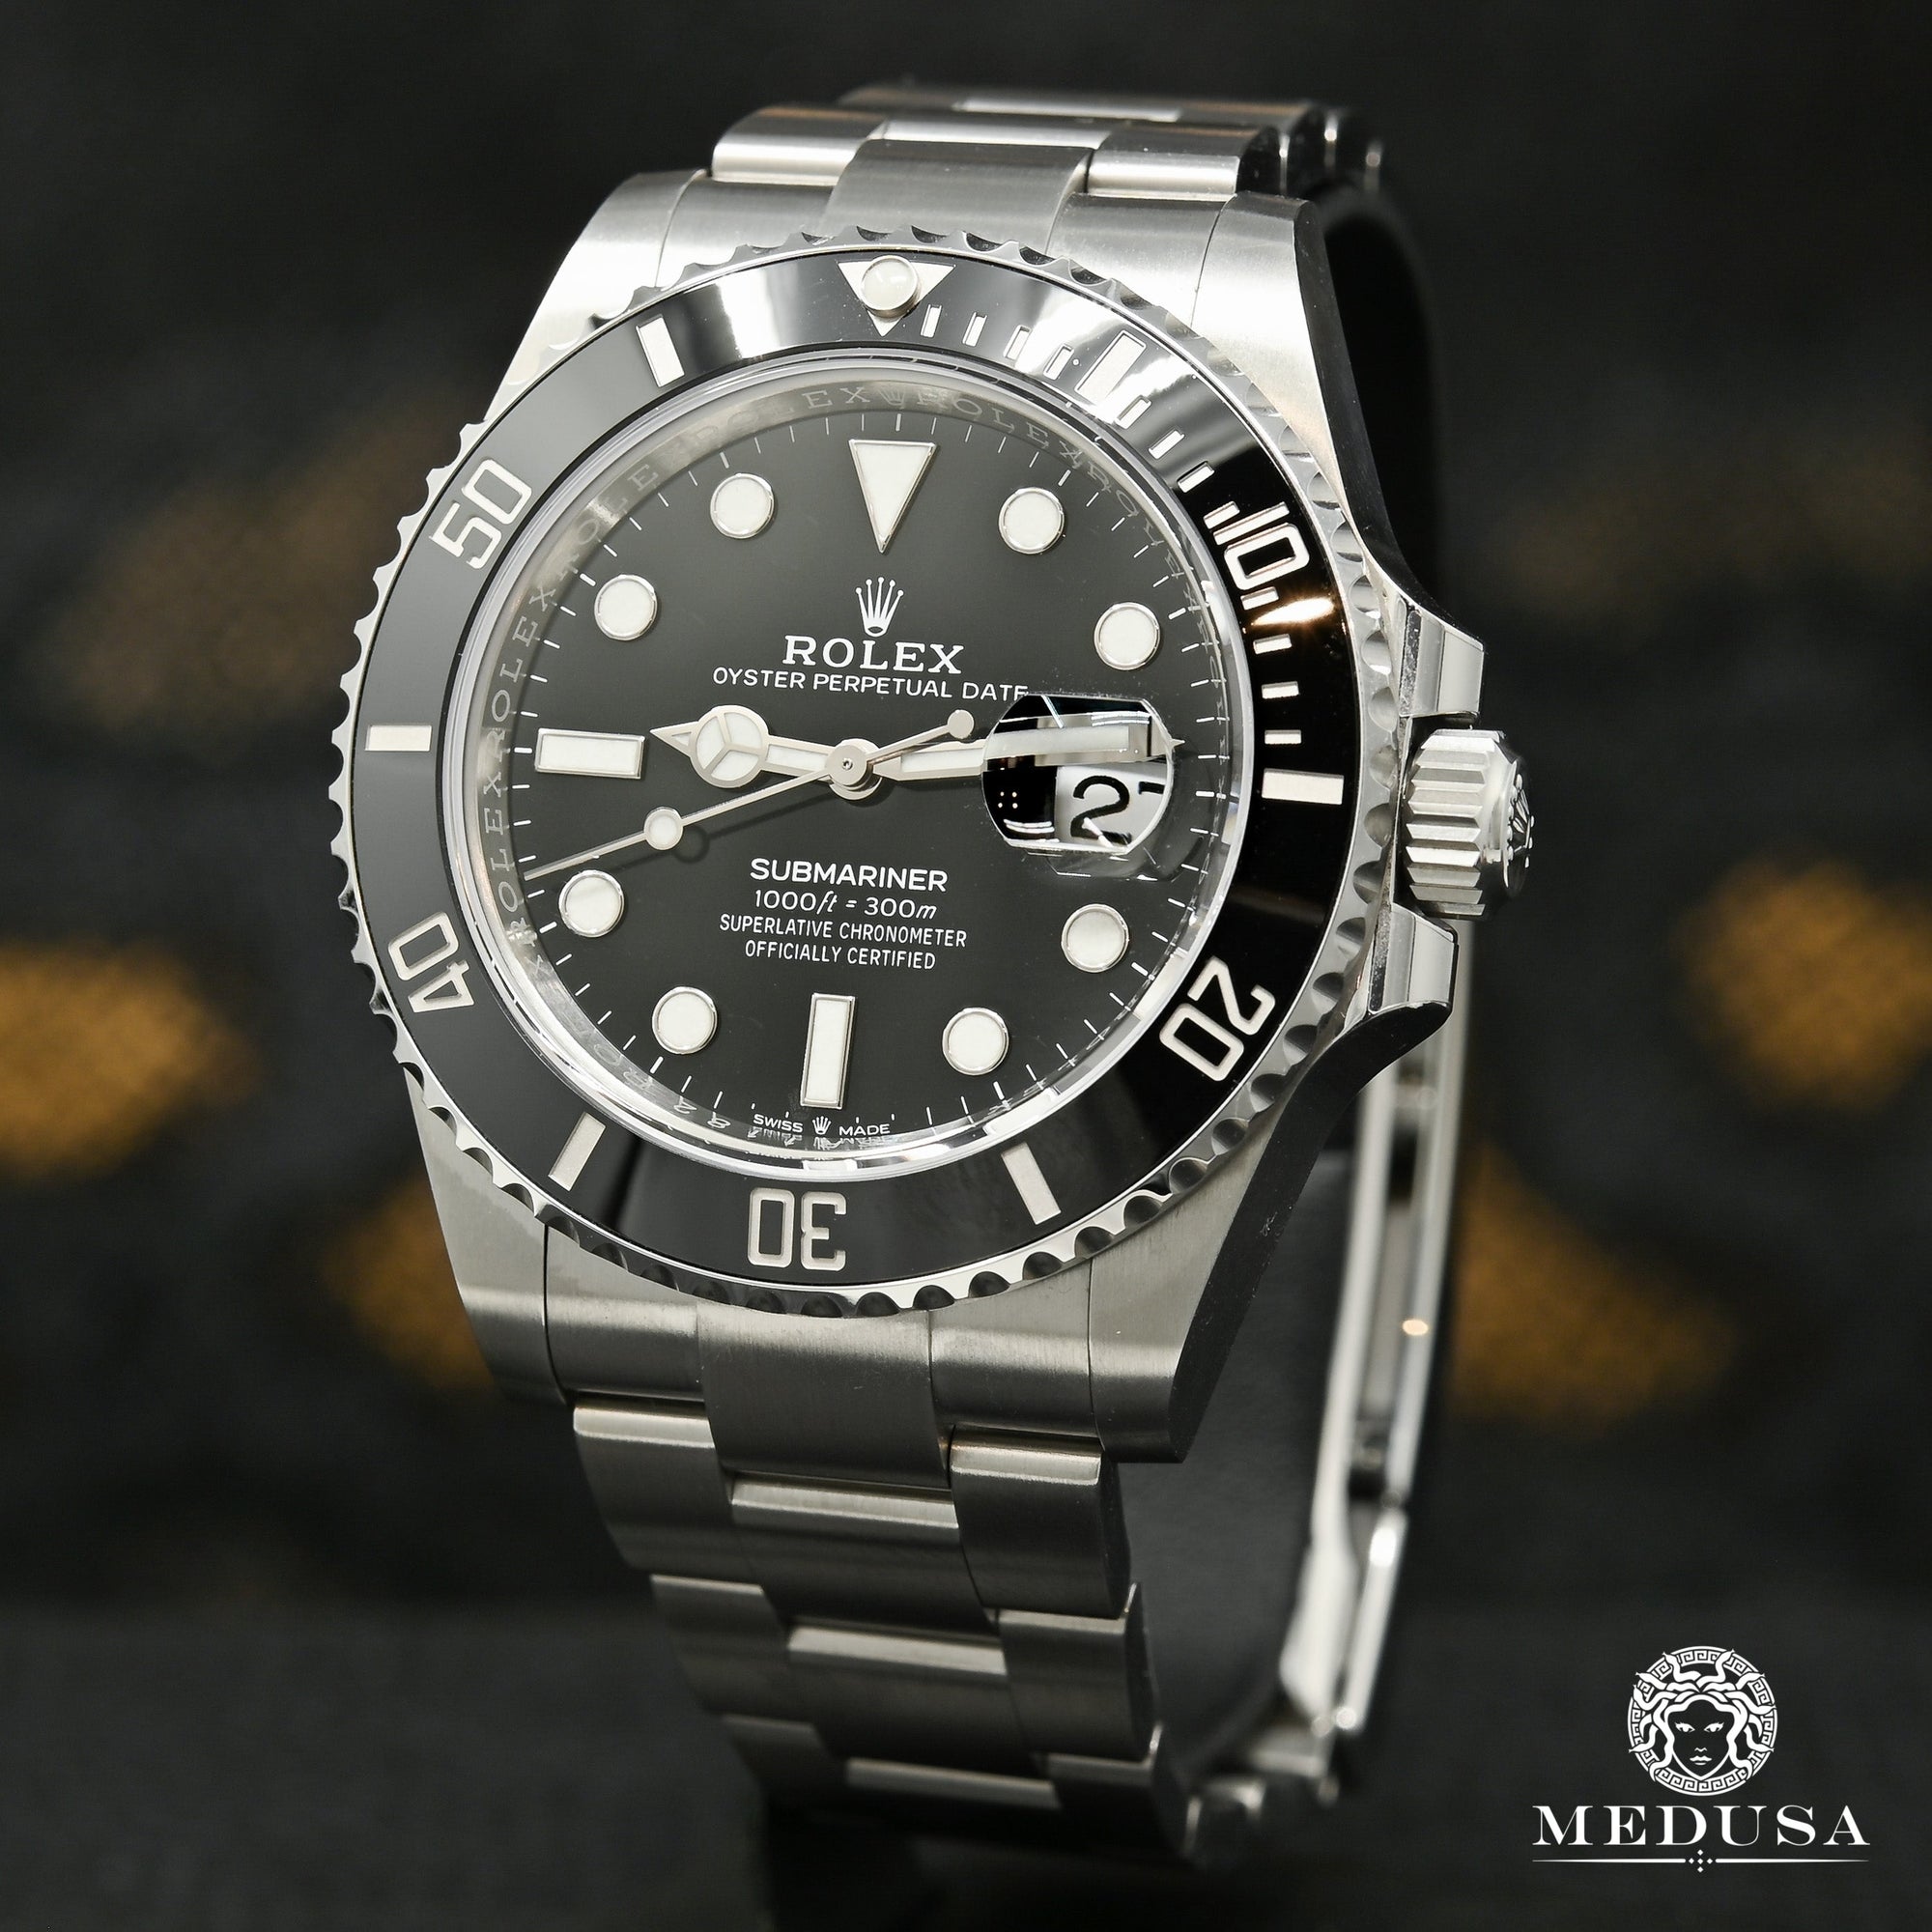 Rolex watch | Rolex Submariner 41mm Men's Watch - 126610LN Stainless